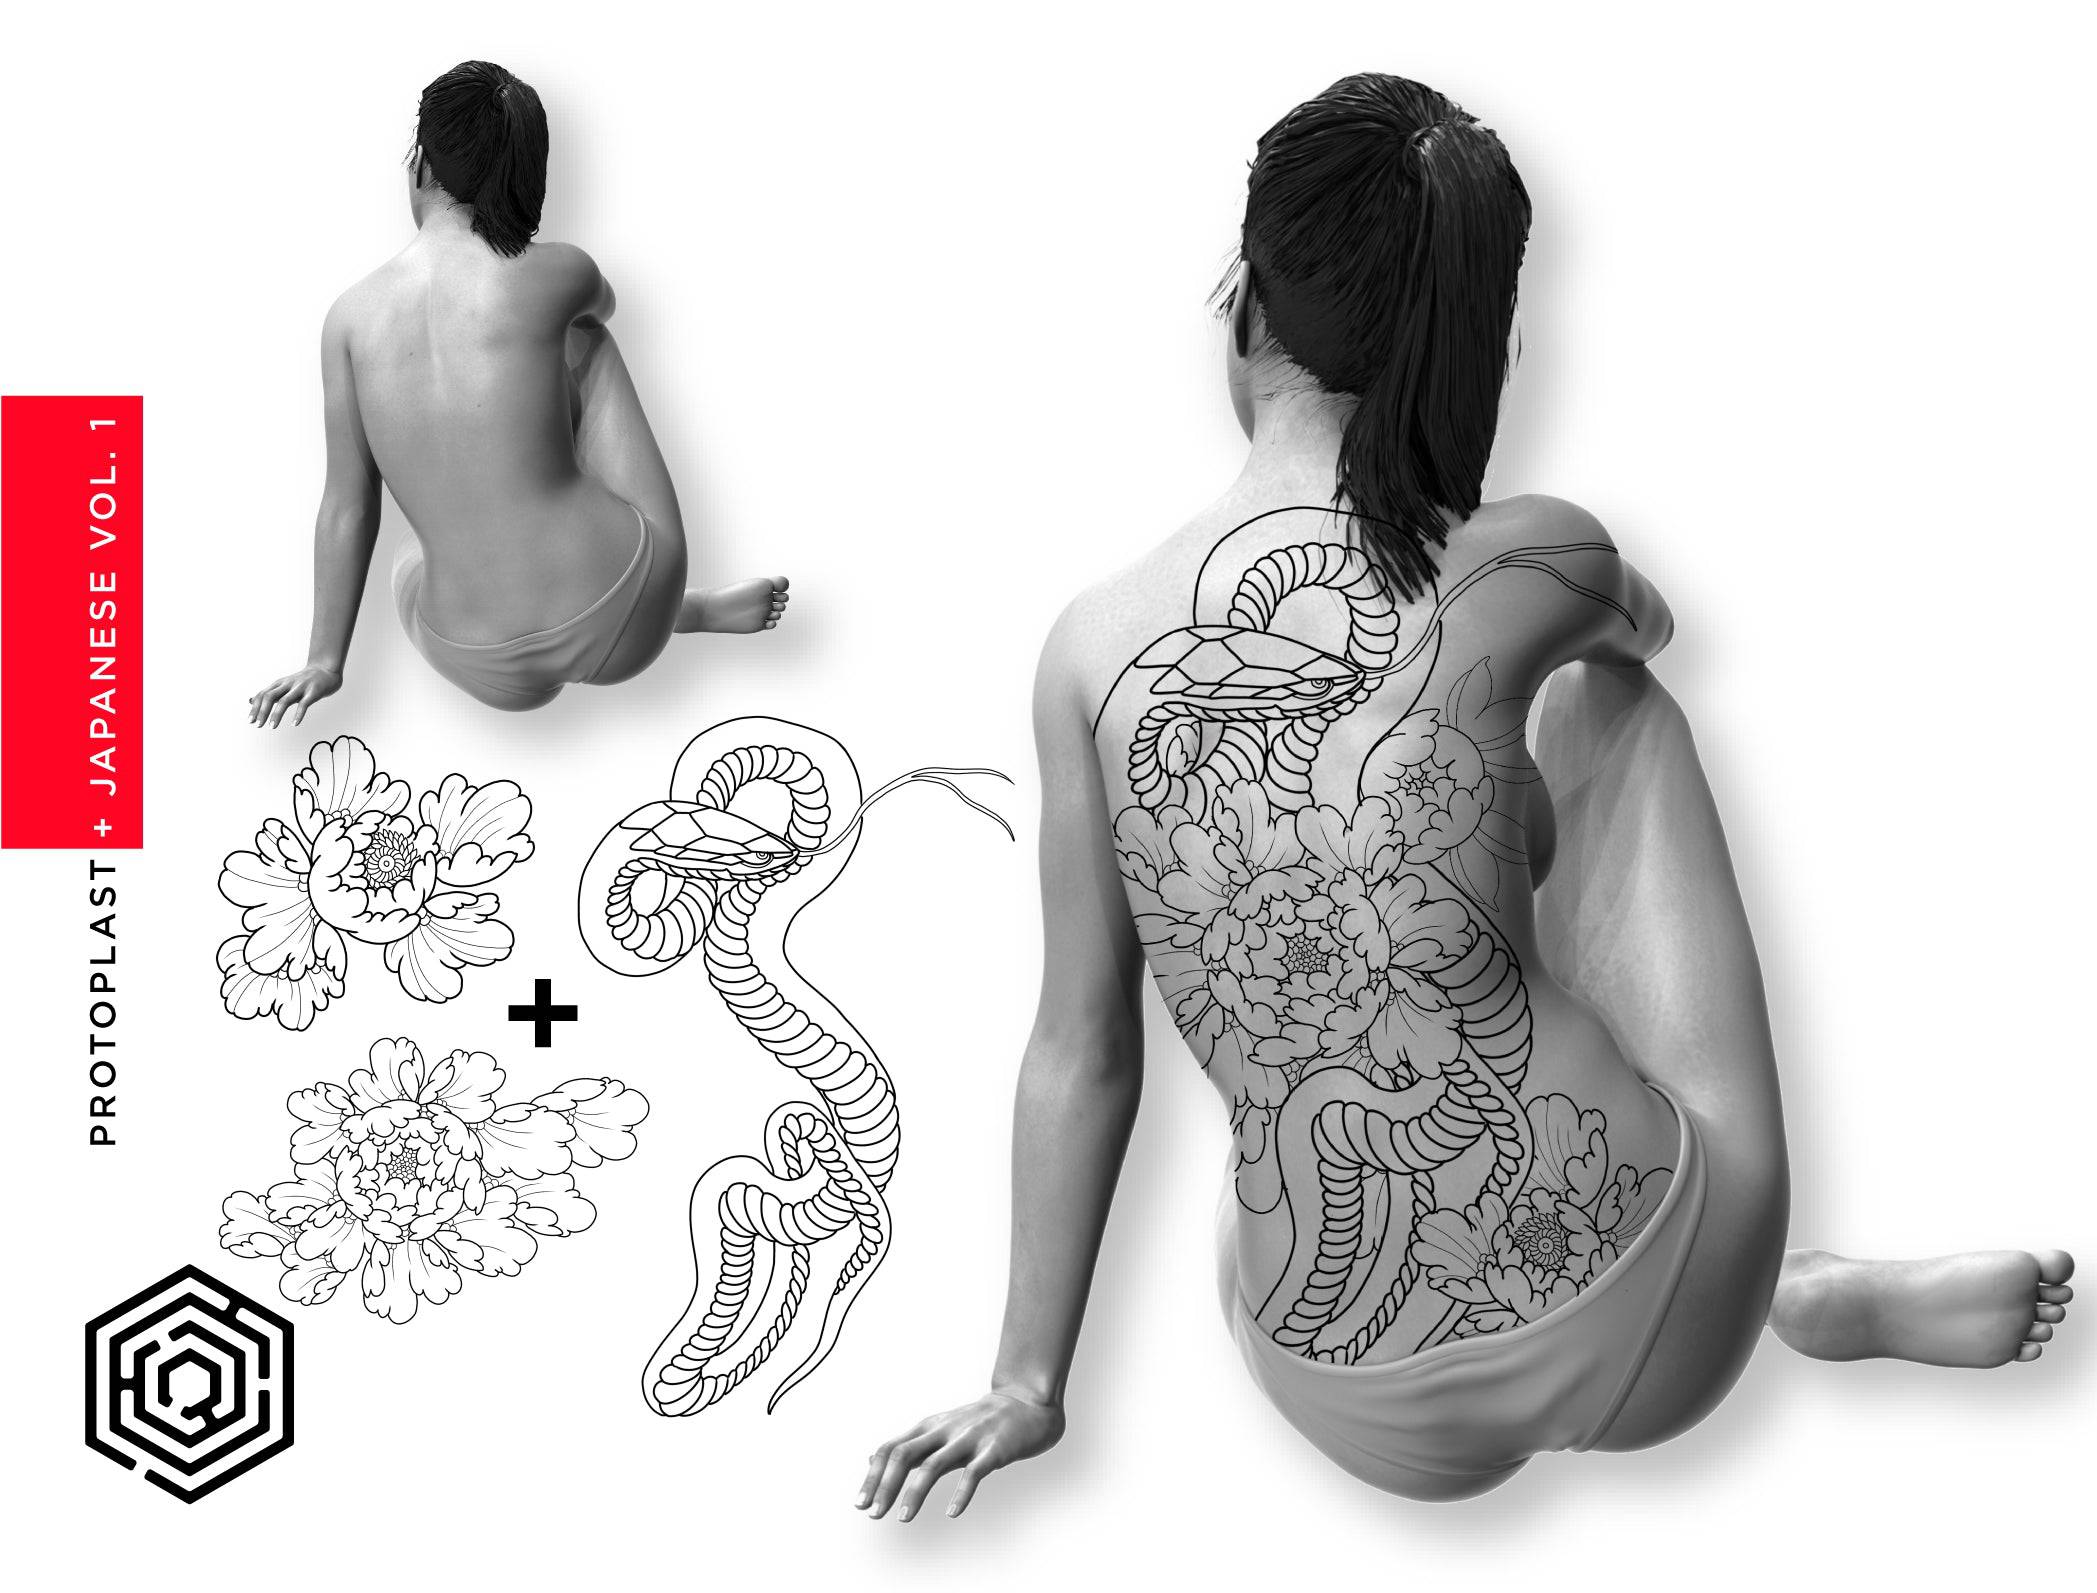 Tool Kit - Procreate Mega-Set: Protoplast Vol. 1 - Tattoo Smart